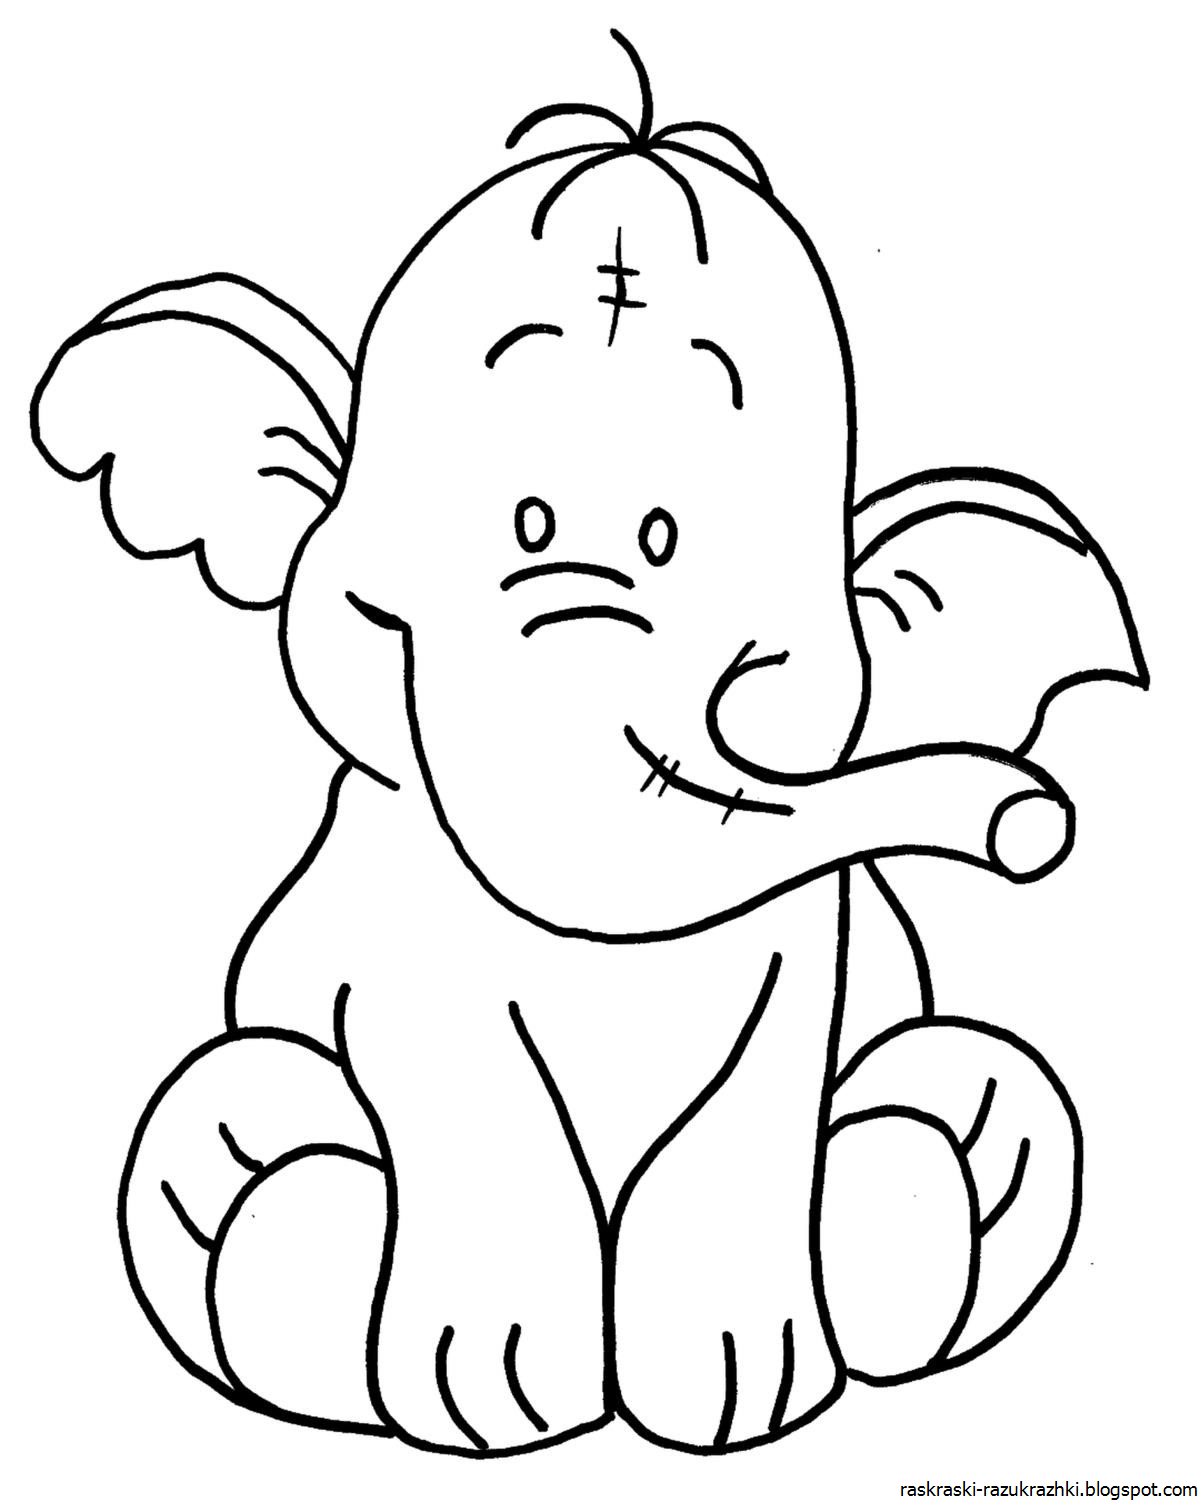 Слоник распечатать. Слон раскраска. Слон раскраска для детей. Контур раскраски для детей. Слоненок раскраска для детей.